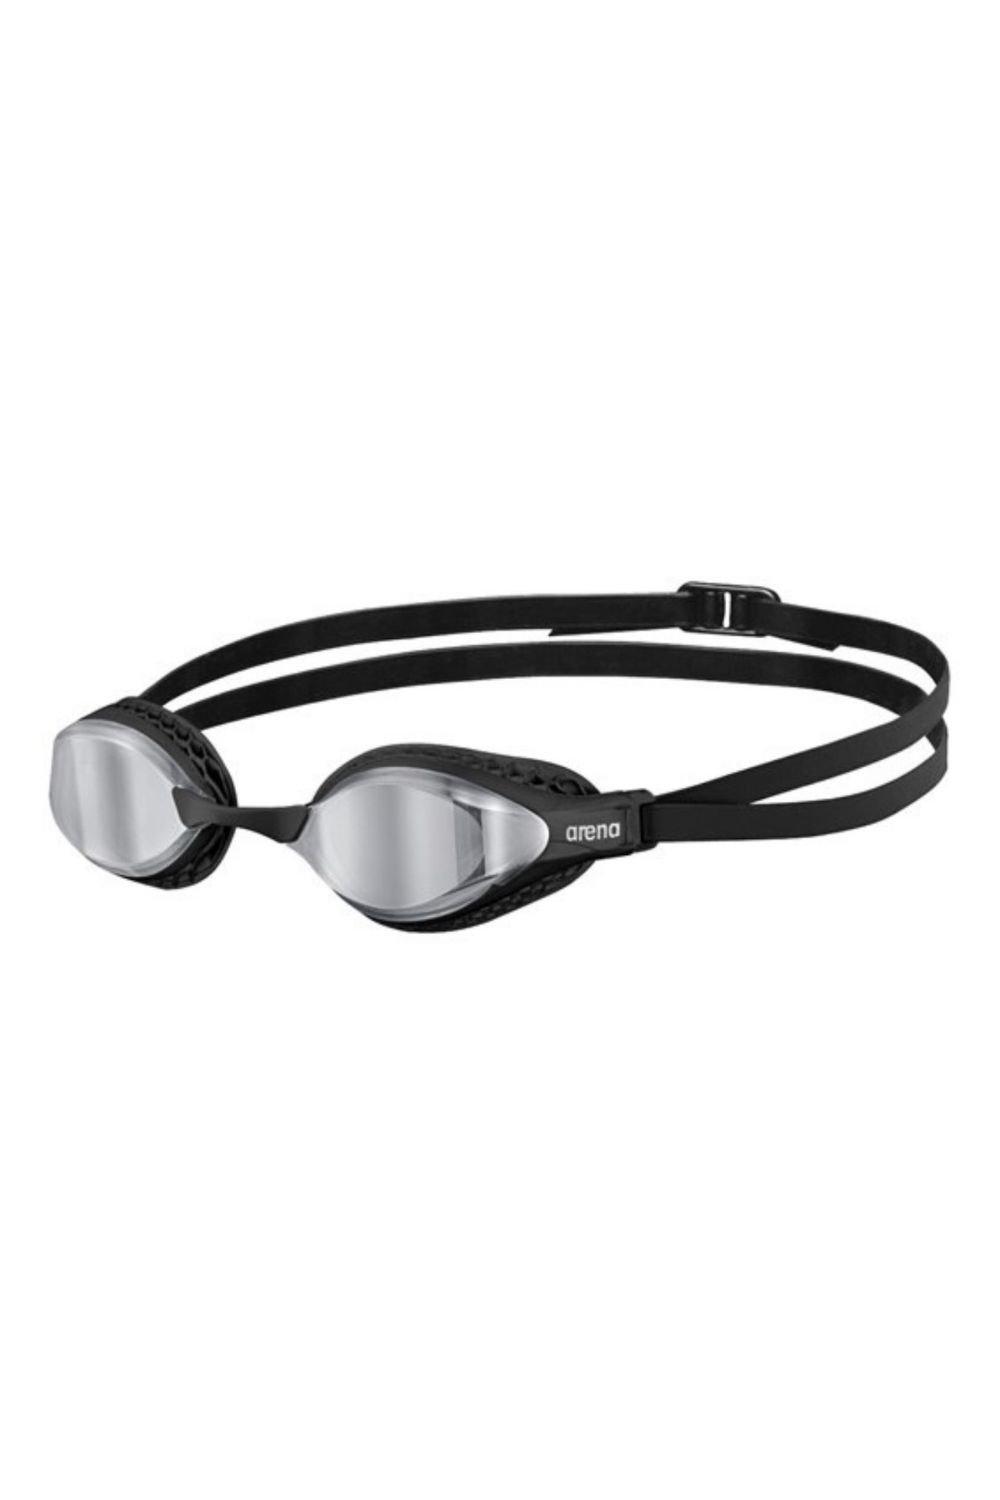 Очки для плавания с зеркалом Airspeed Arena, черный очки для плавания с зеркалом airspeed arena черный